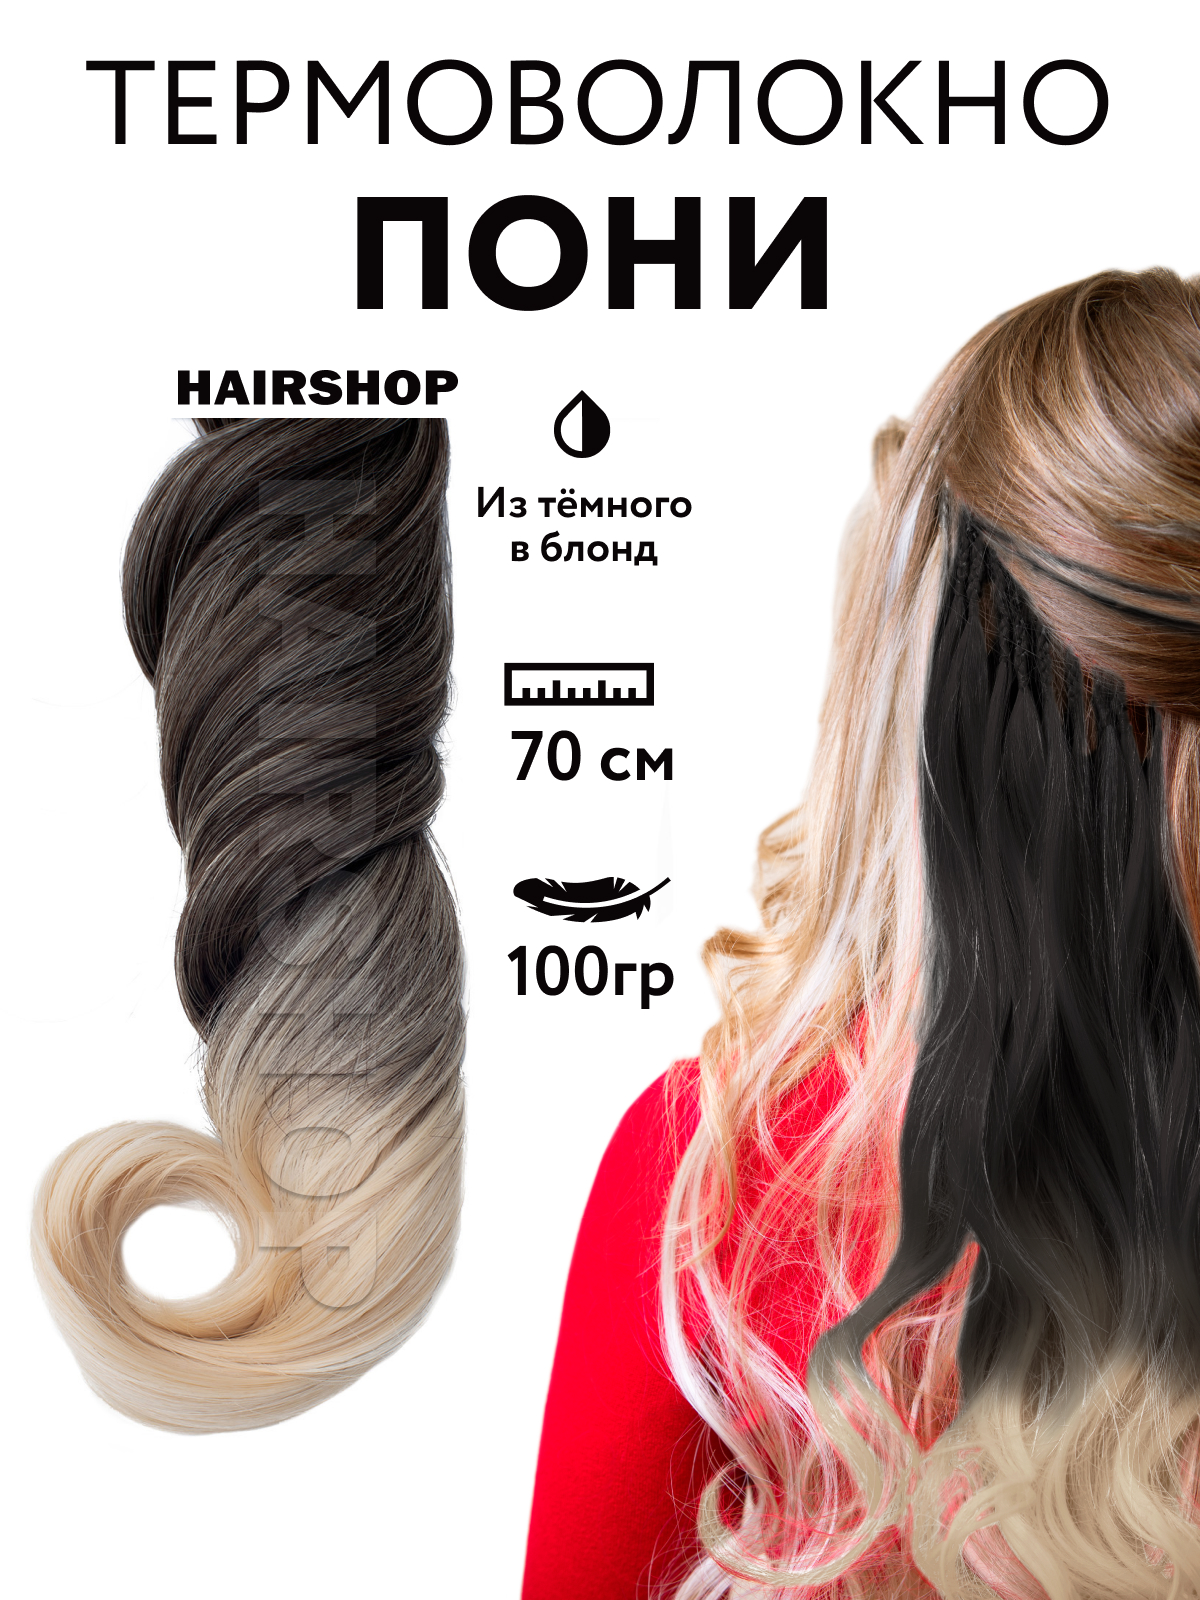 Канекалон HAIRSHOP Пони HairUp для точечного афронаращивания Из темного в блонд 1,4м канекалон hairshop пони hairup для точечного афронаращивания с21 сине голубой 1 4м